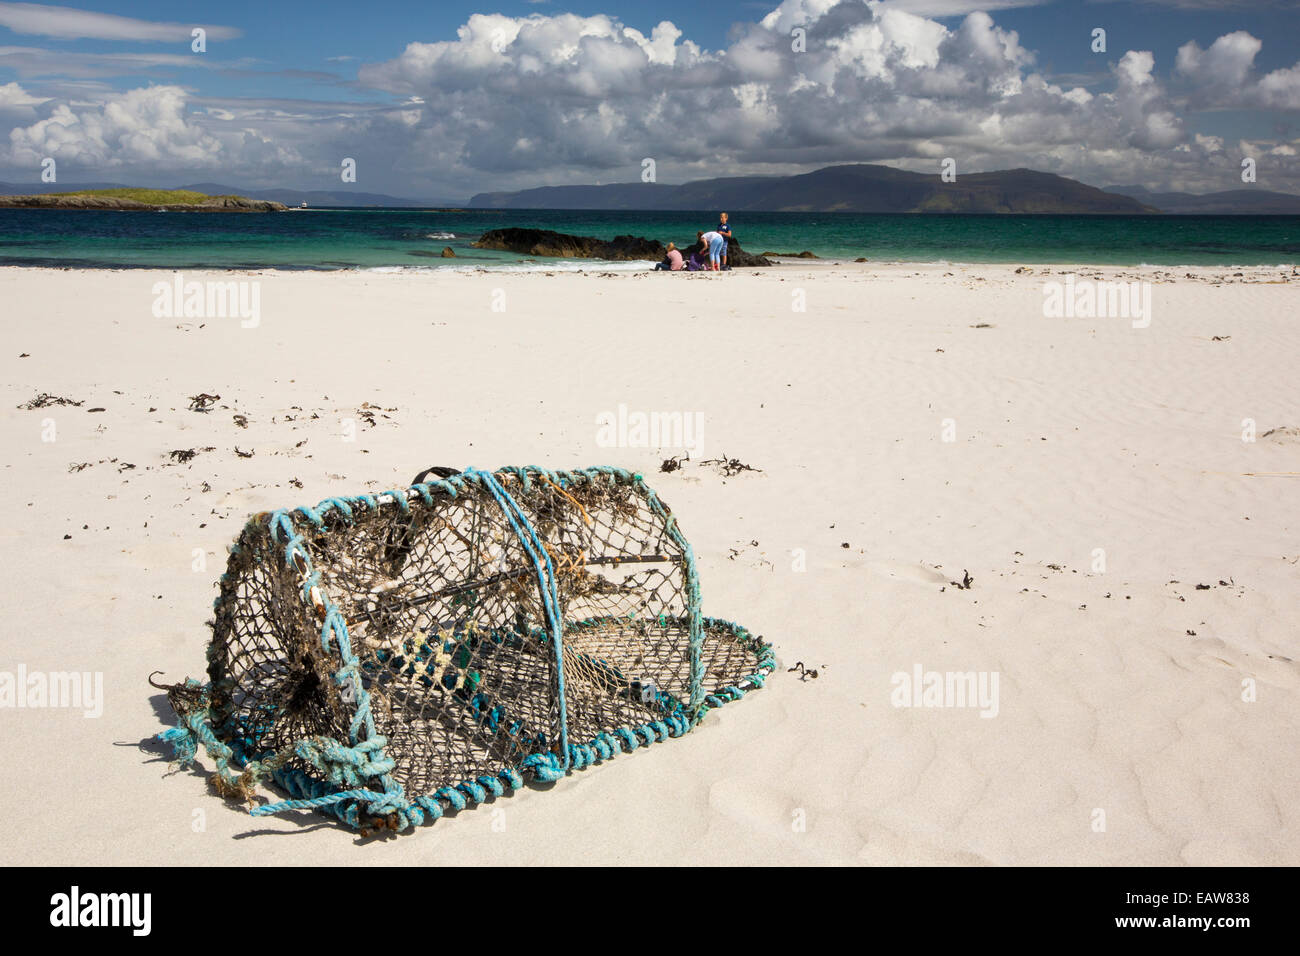 Plages de sable blanc et des mers propres sur la côte nord d'Iona, off Mull, Écosse, Royaume-Uni, avec un lobster pot lavé à terre. Banque D'Images